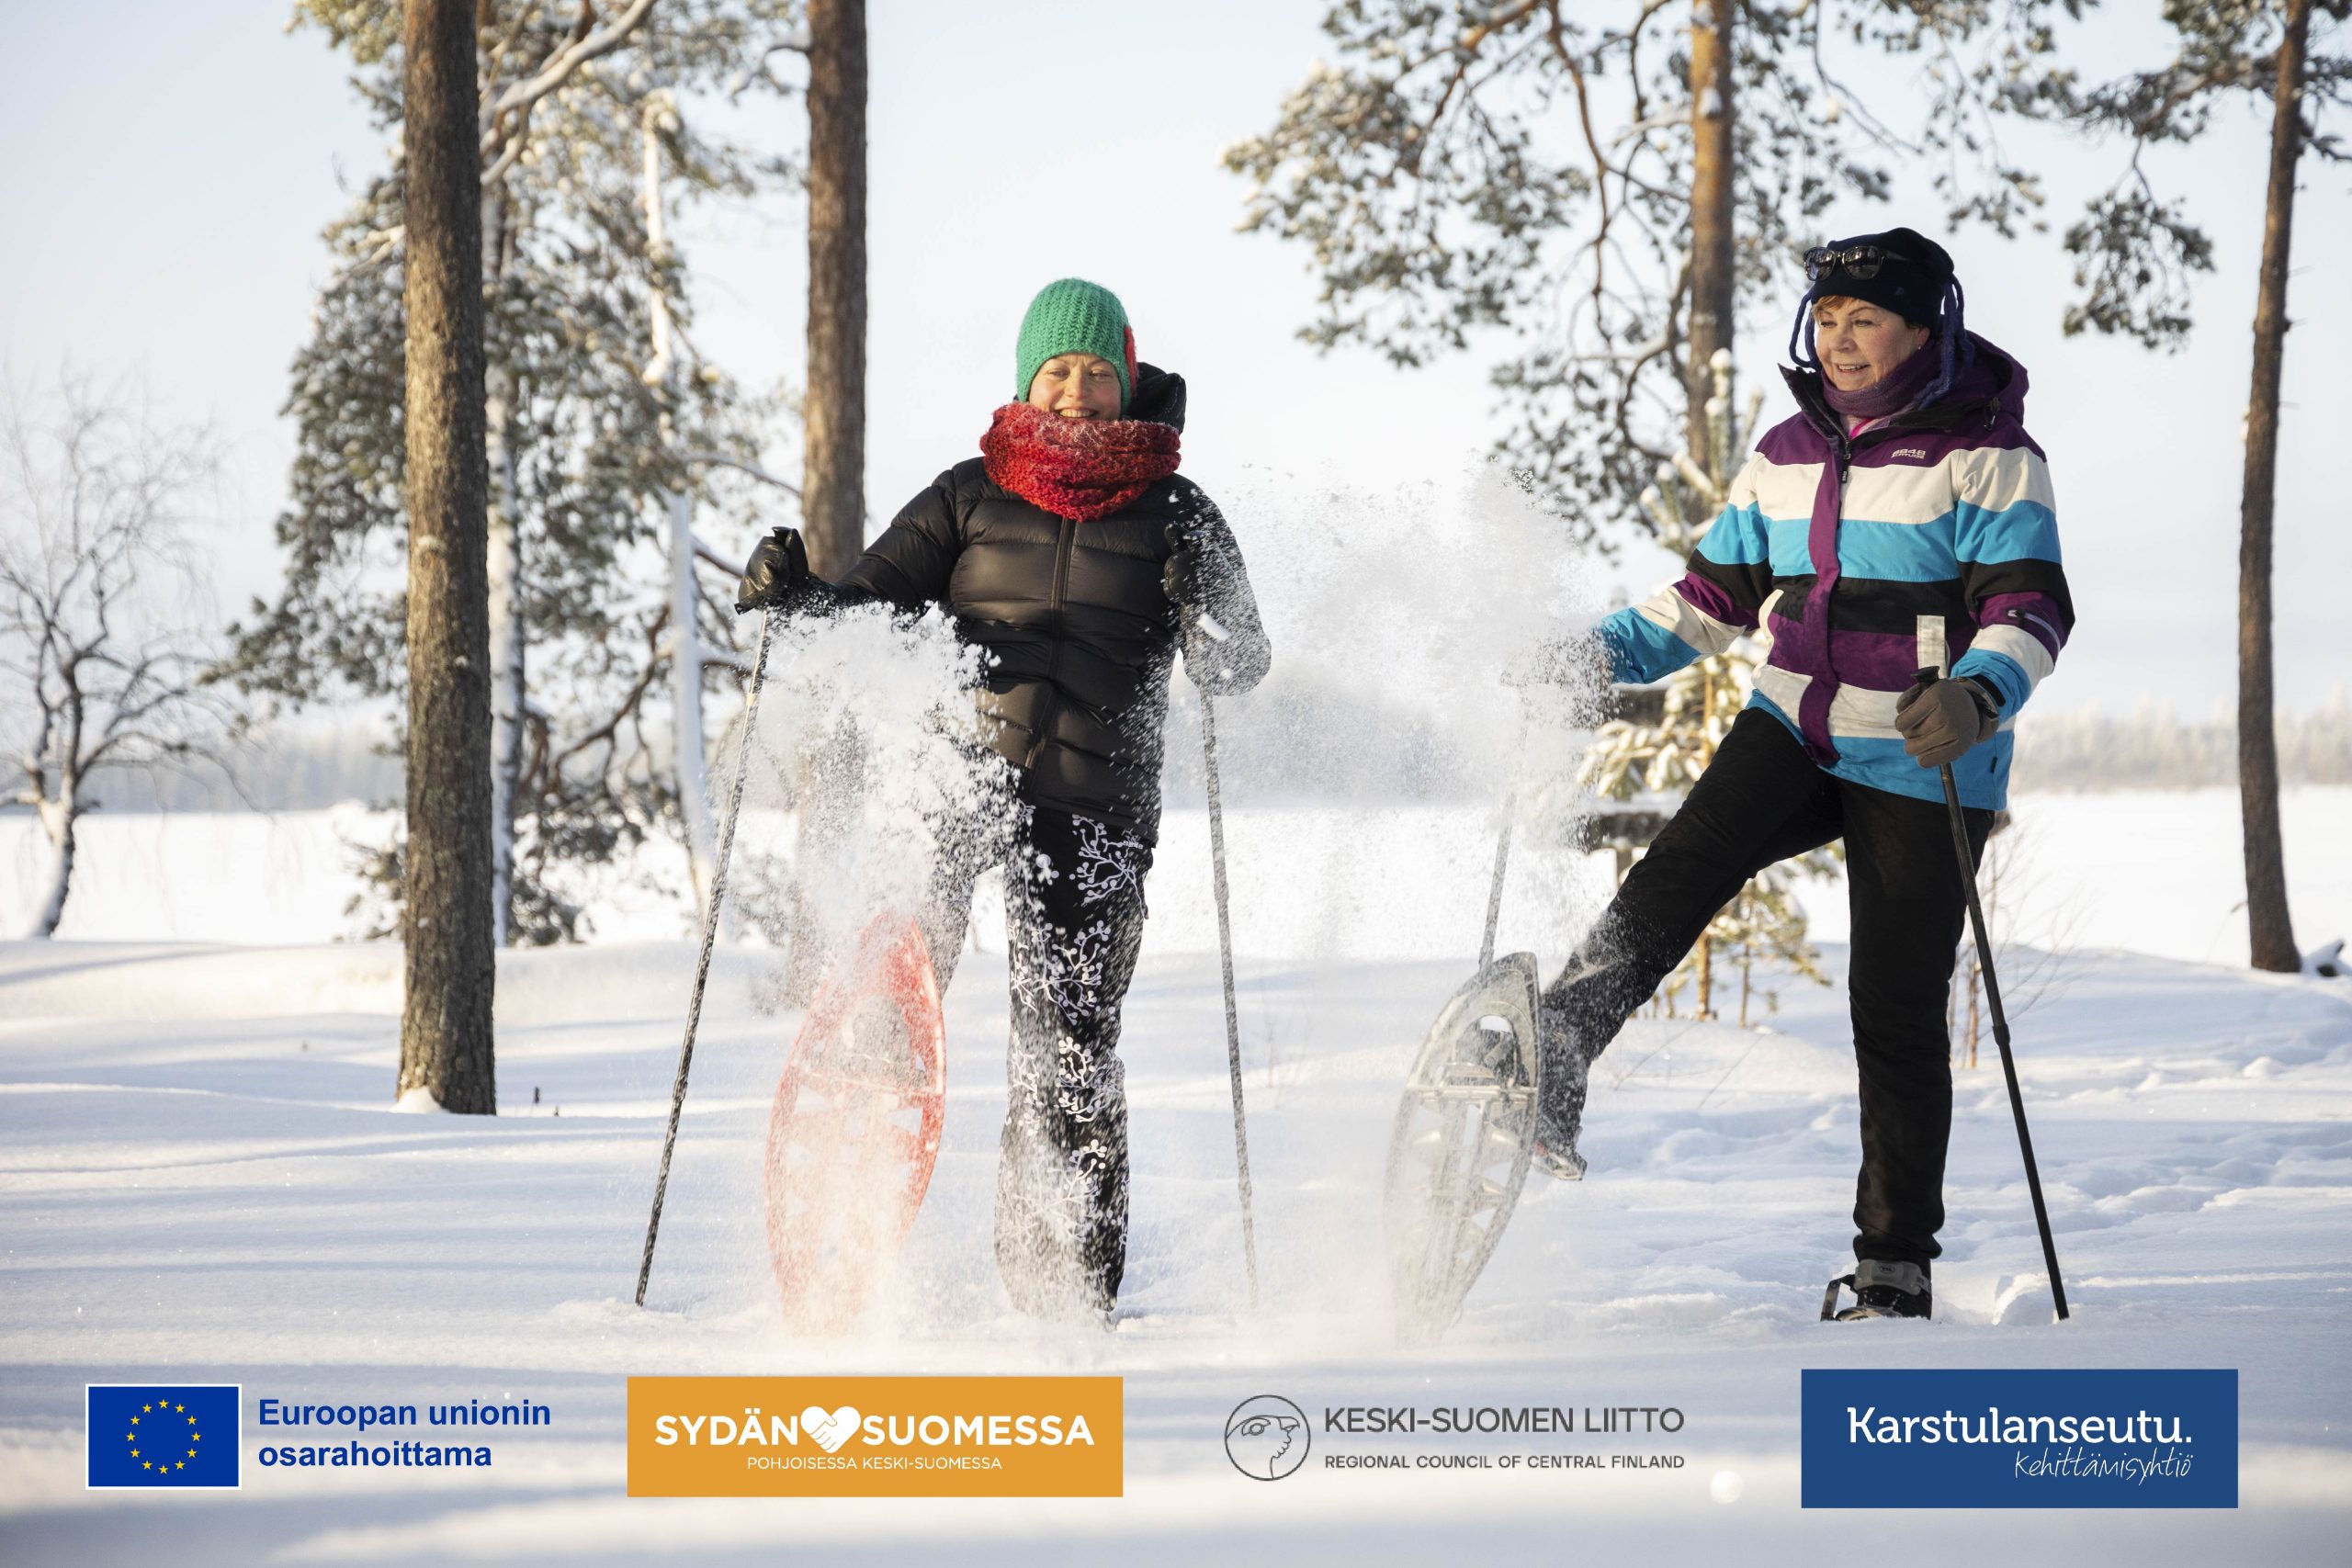 Kaksi henkilöä lumisessa metsässä lumikengillä, EU:n osarahoittama, Sydänsuomessa, Keski-Suomen liitto, Kehittämisyhtiö Karstulanseutu -logot